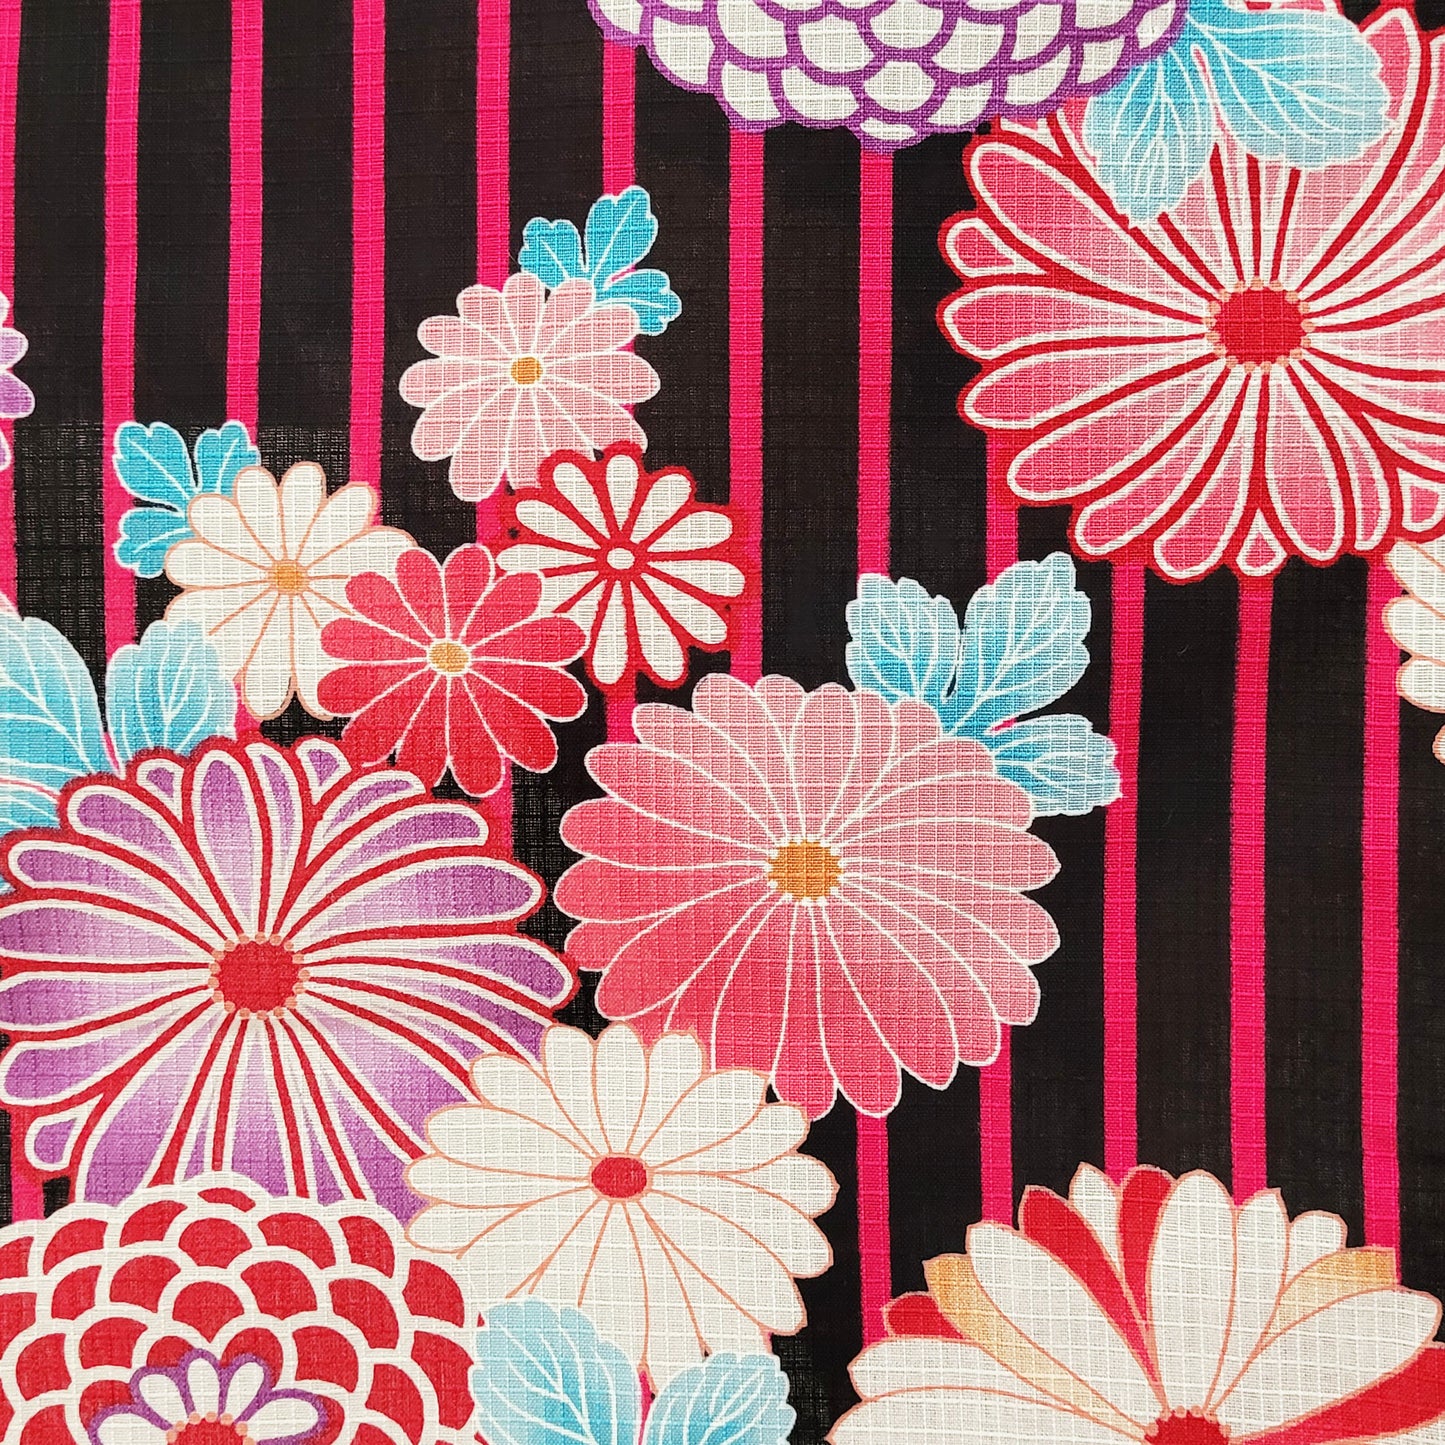 Yukata Kimono Japanese Flowers in Pink and Black Stripes